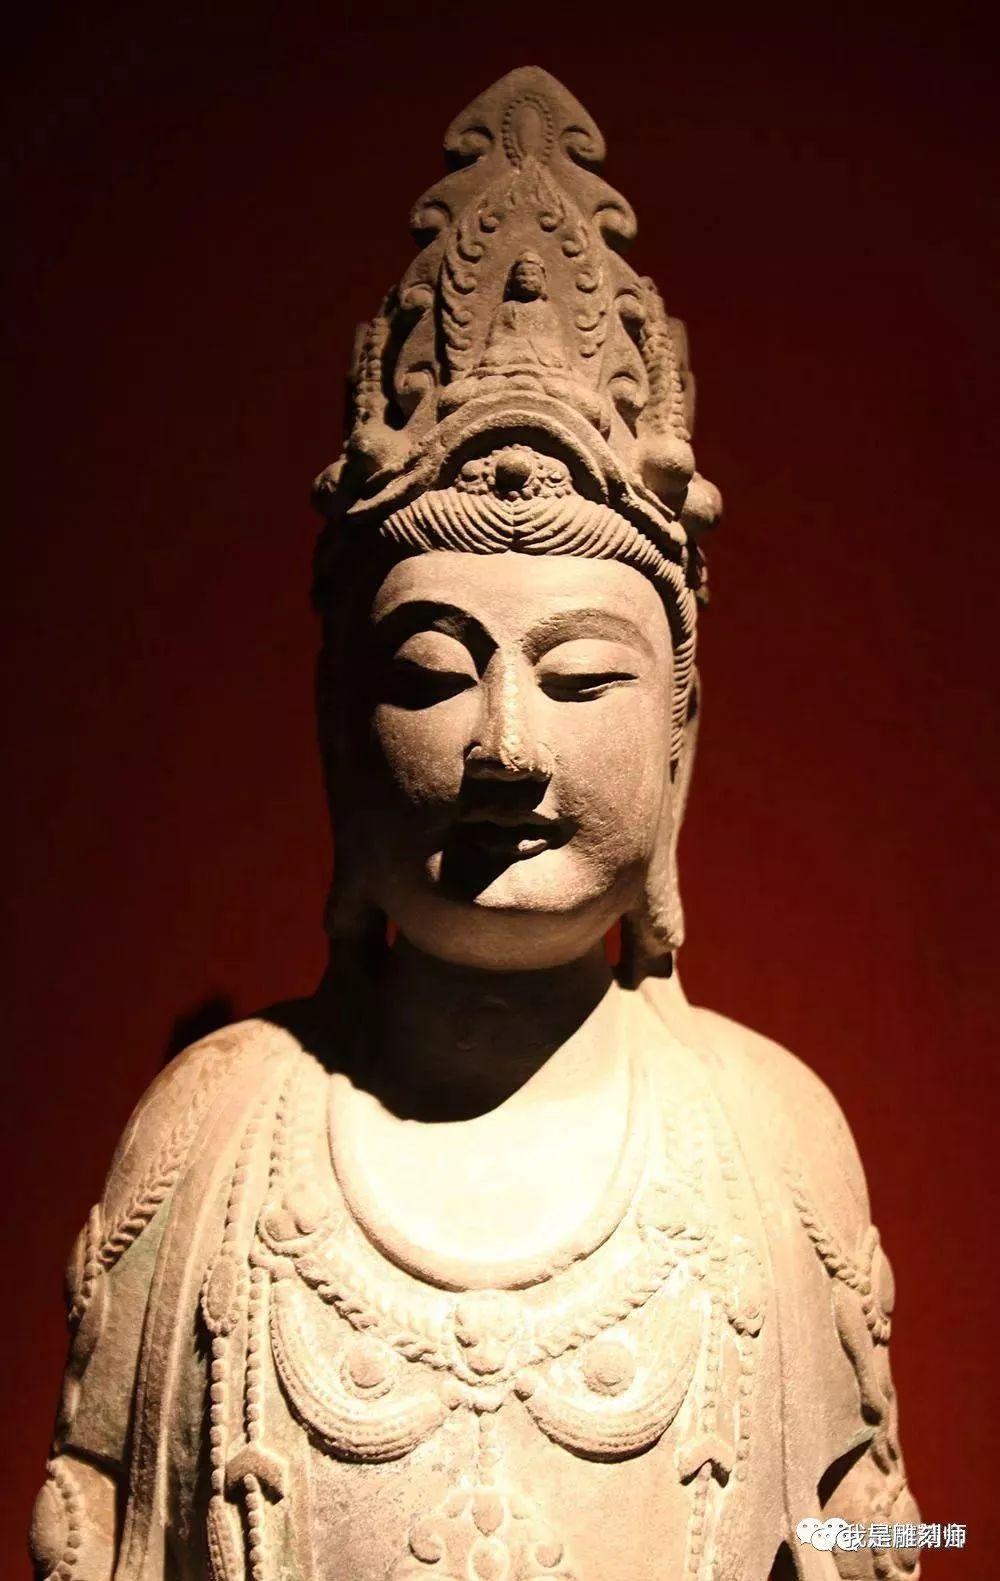 中国佛教雕塑艺术在世界雕塑艺术宝库中,具有鲜明的民族风格和深厚的